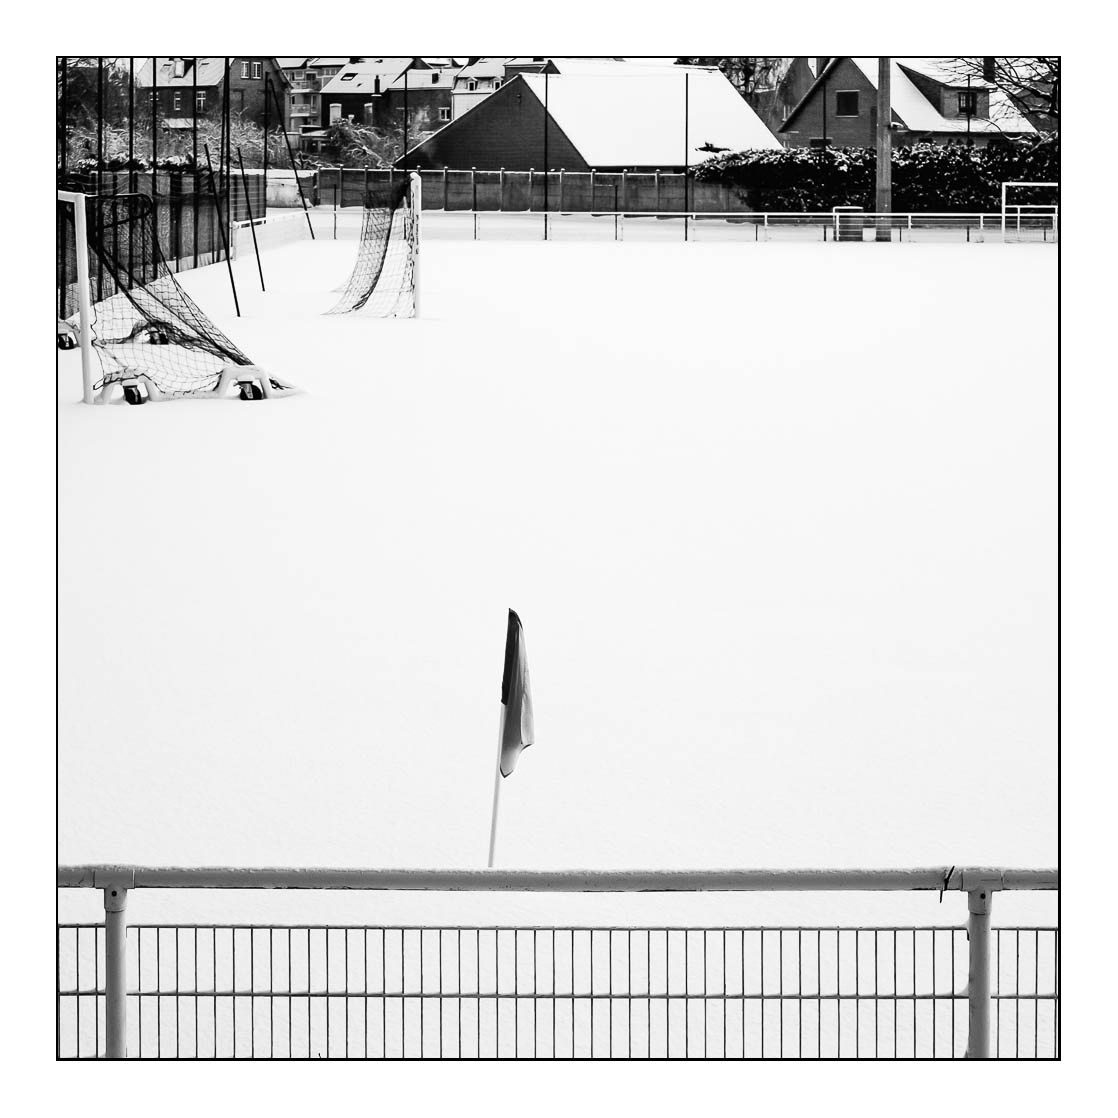 neige snow town ville street photography black and white monochrome france arras noir et blanc